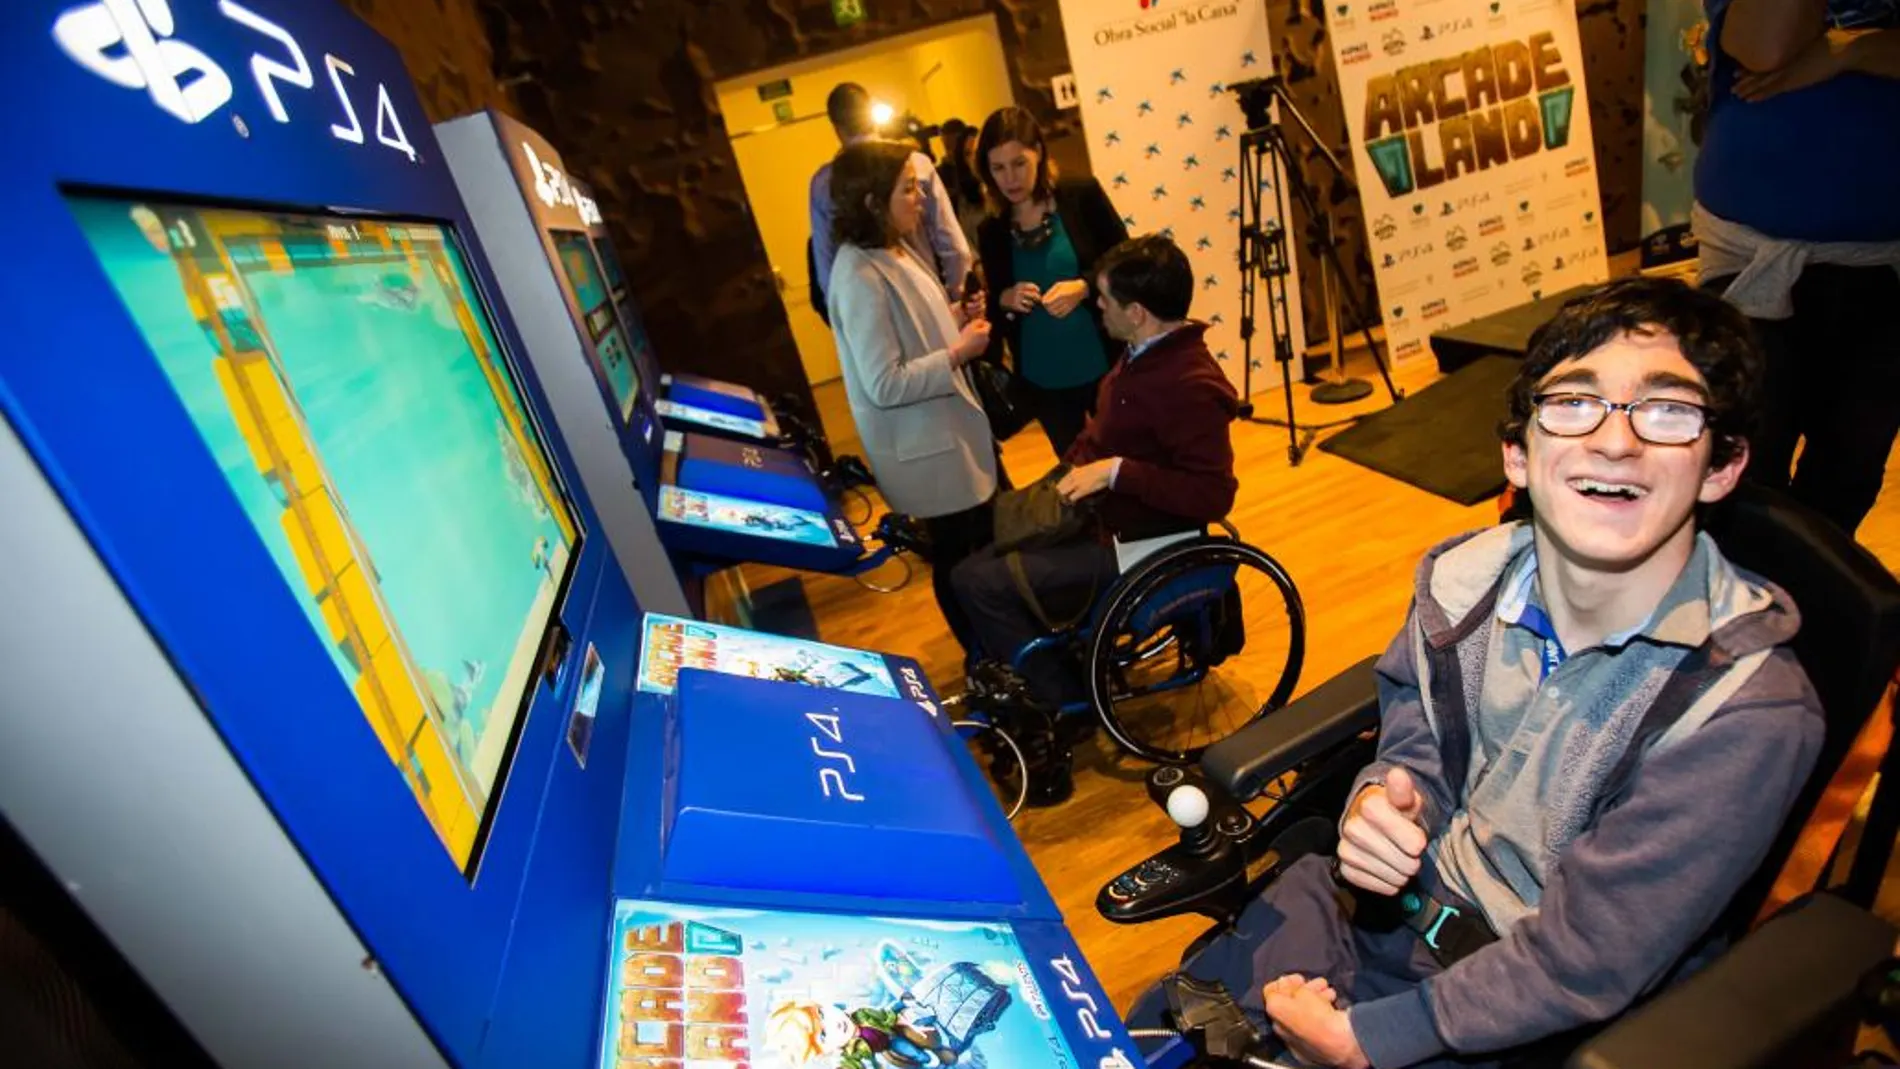 Un niño afectado de parálisis cerebral prueba el videojuego Arcade Land